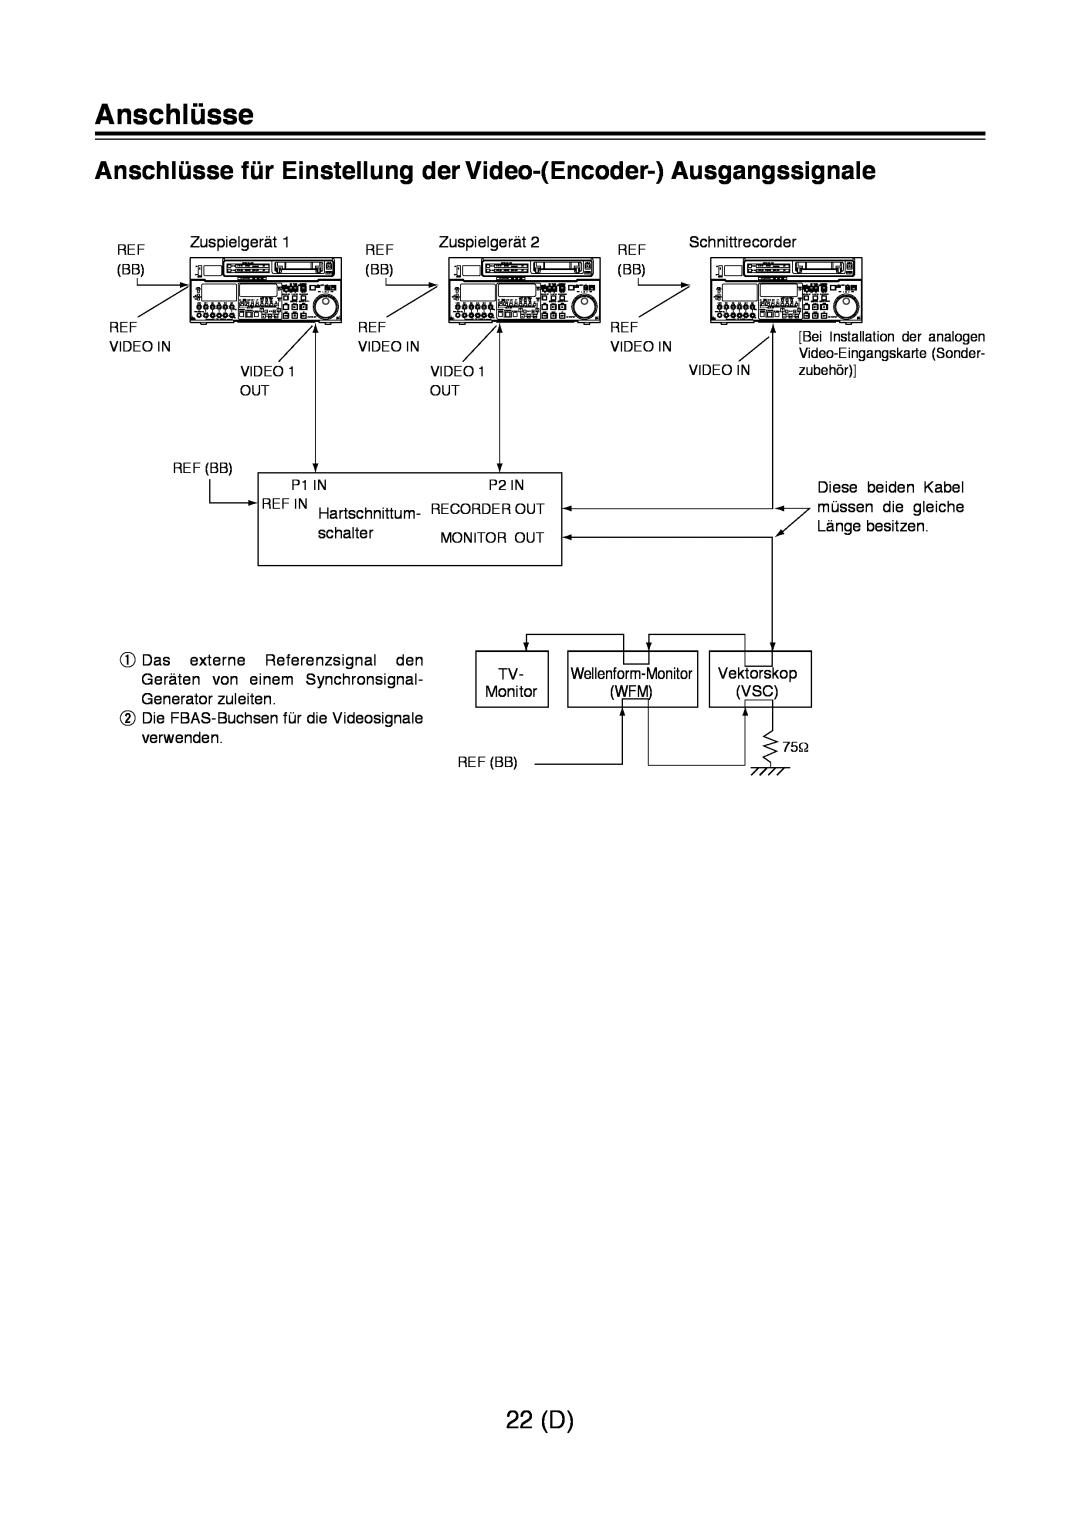 Panasonic AJ-D960 operating instructions Anschlüsse für Einstellung der Video-Encoder- Ausgangssignale, 22 D 